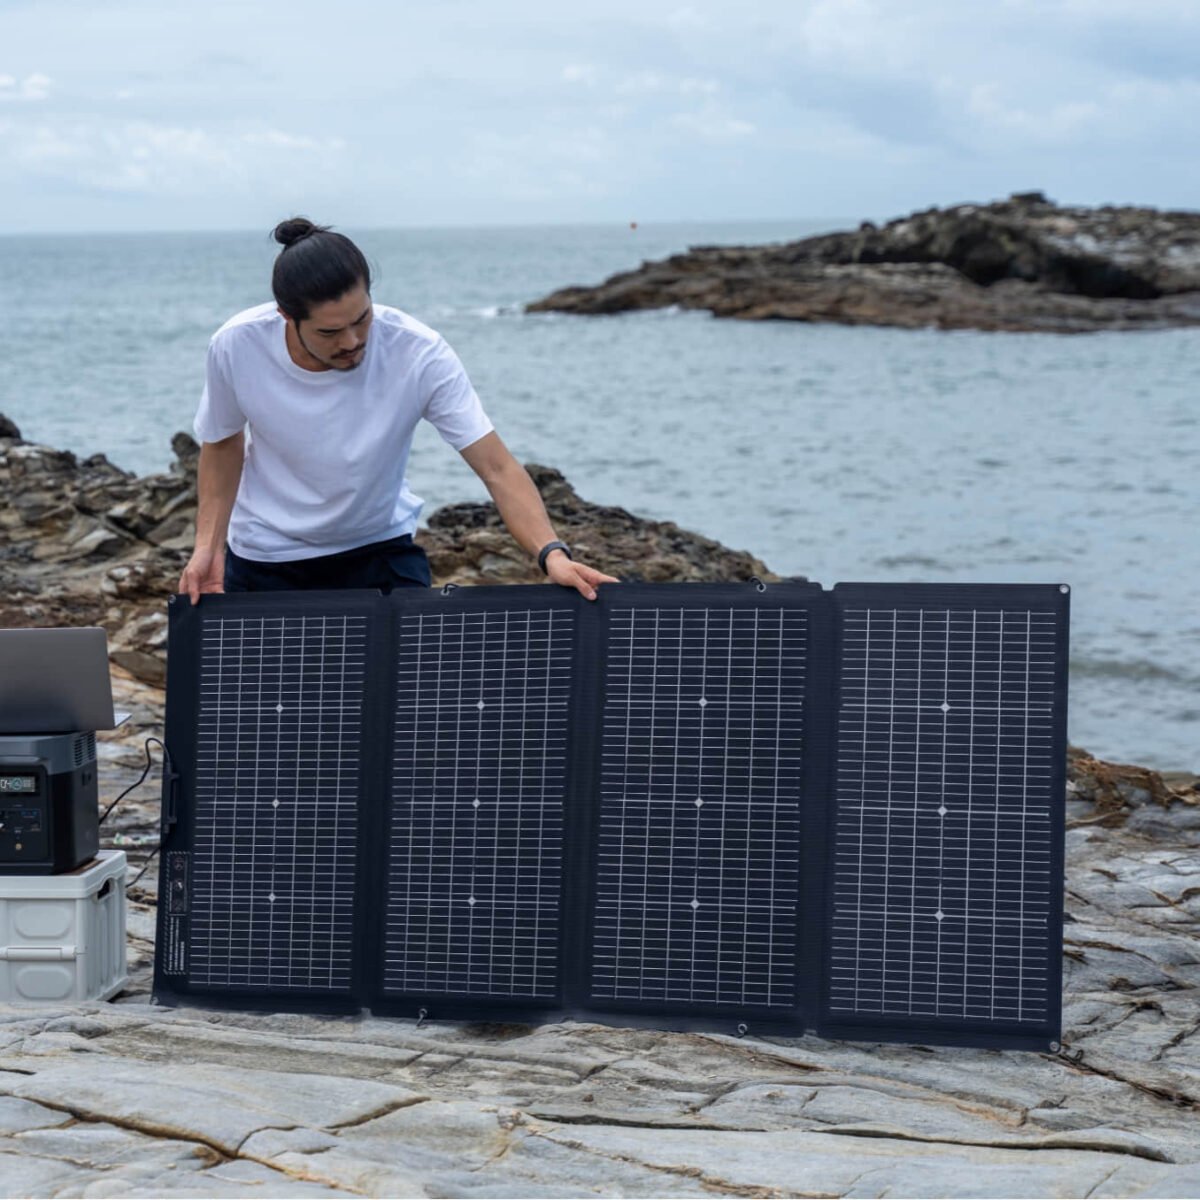 EcoFlow 220W Bifacial Portable Solar Panel Review